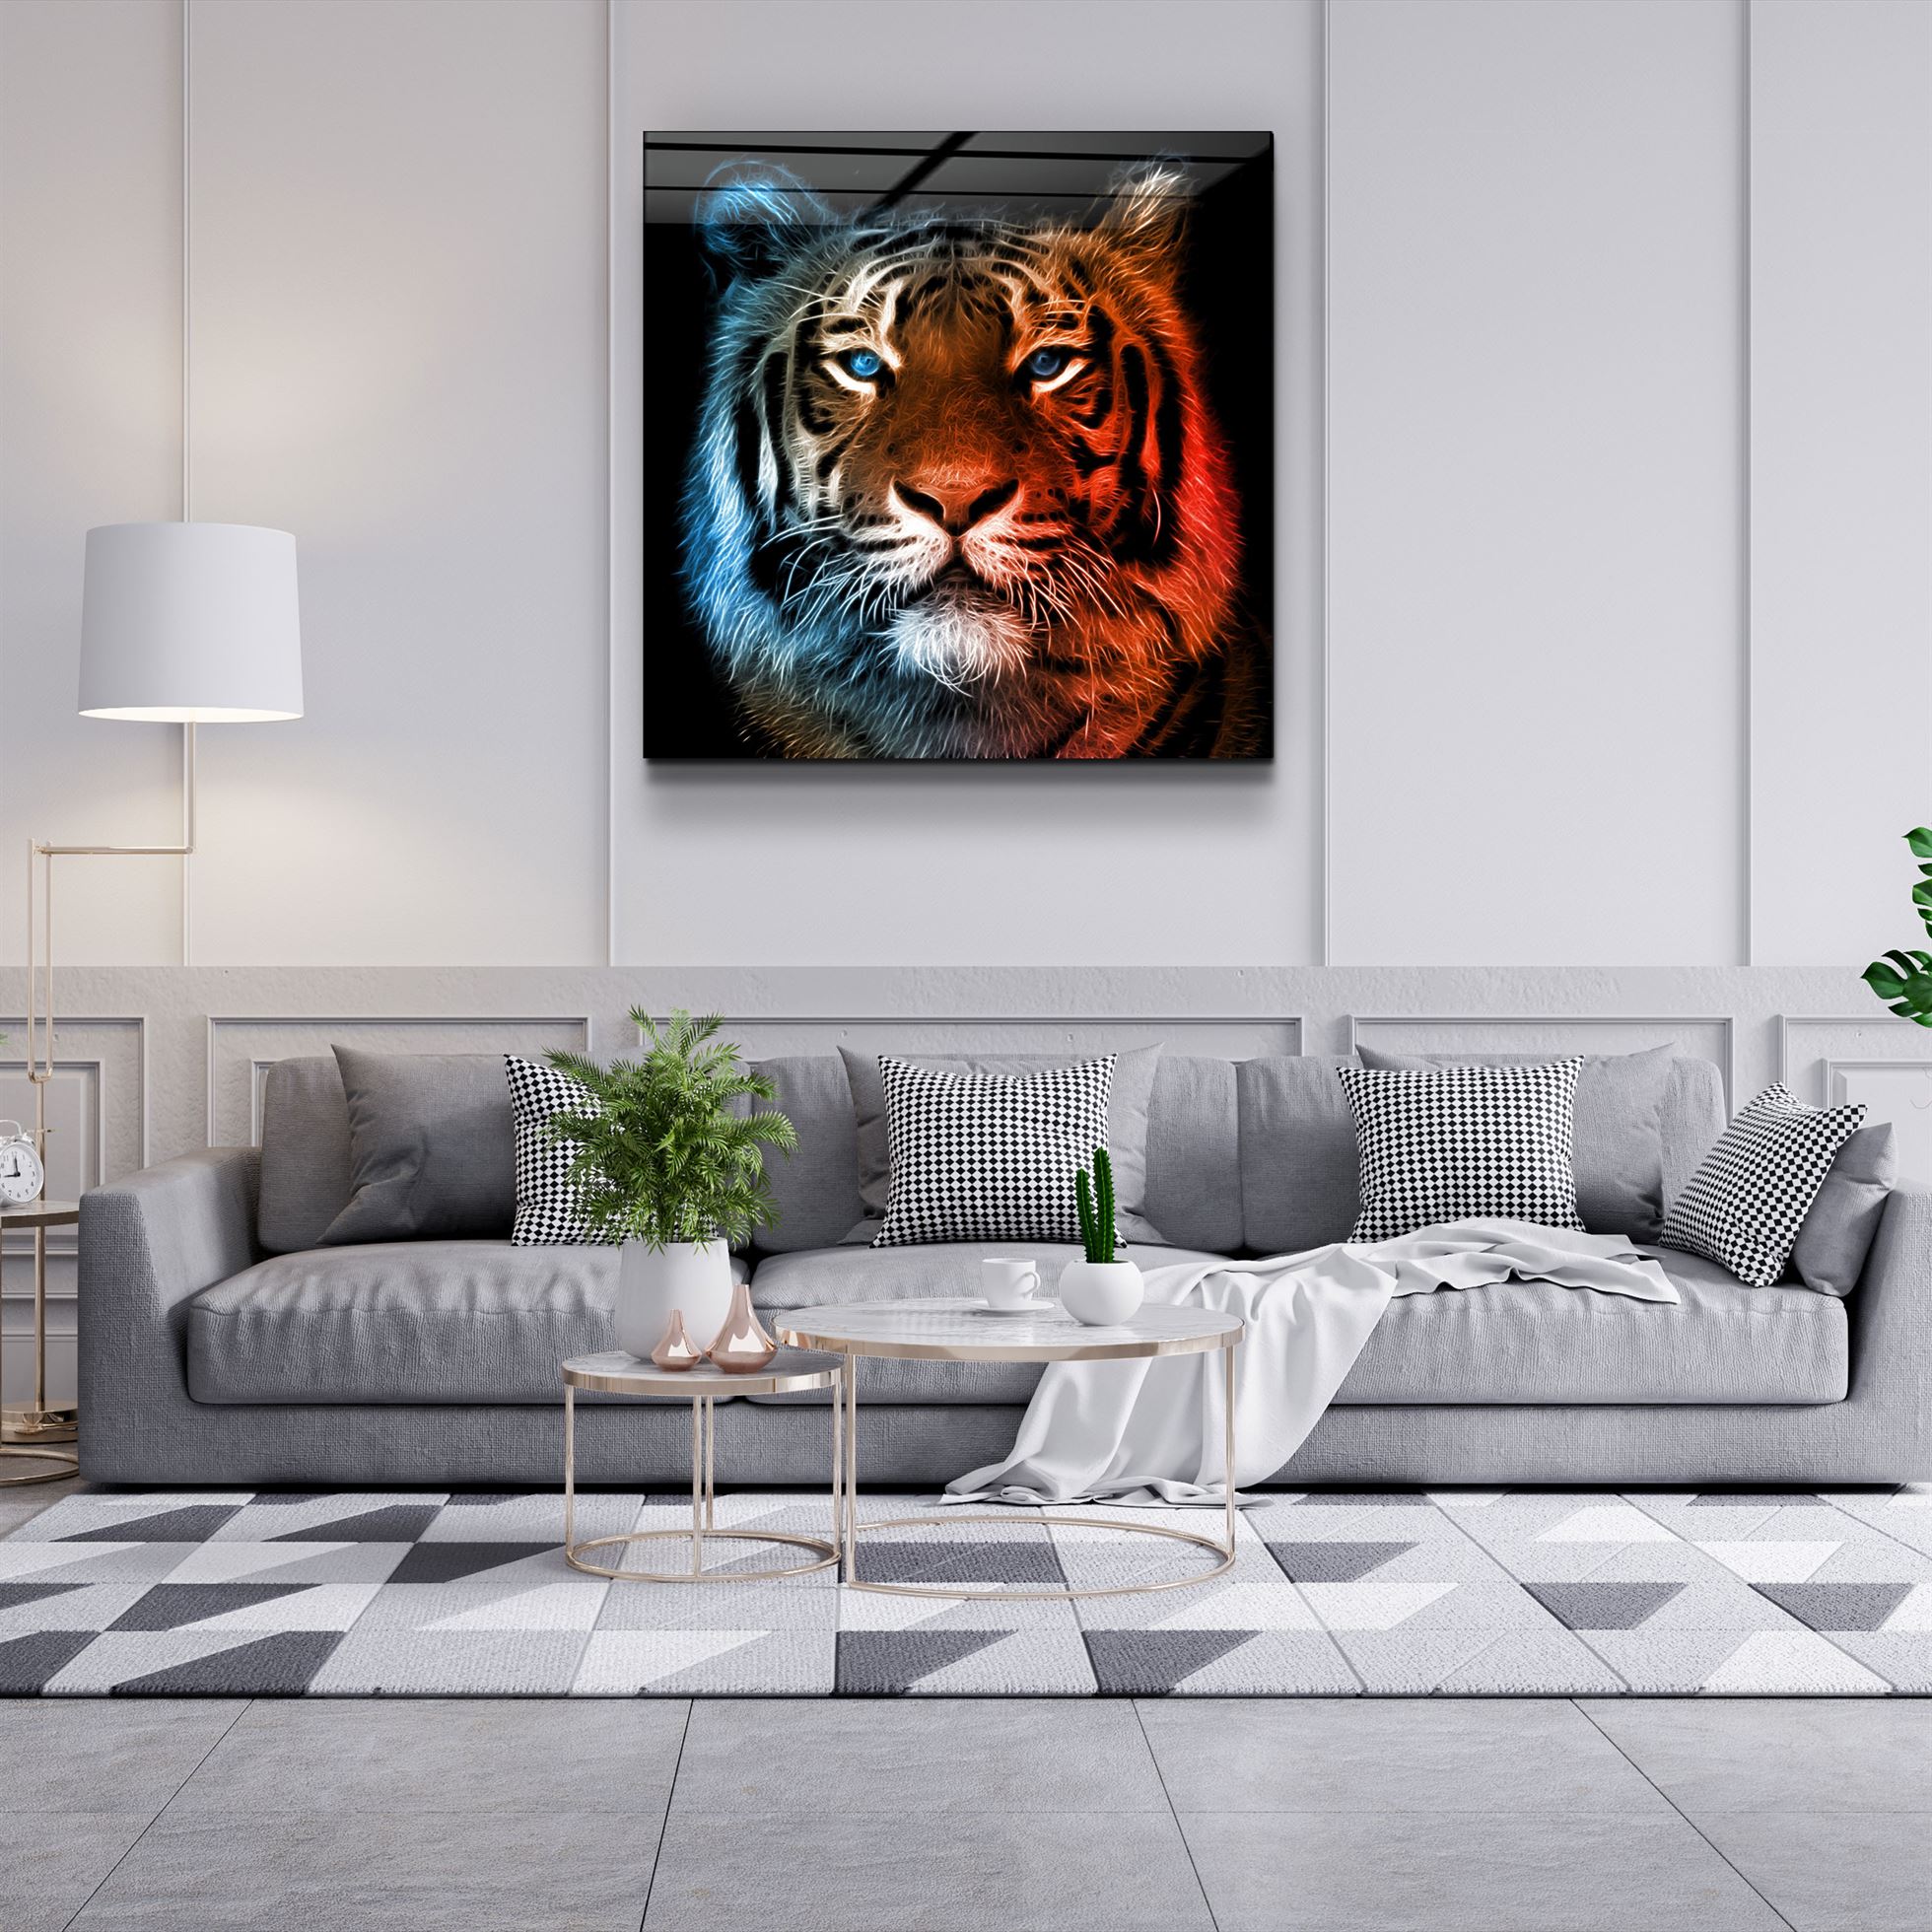 ・"Tiger"・Glass Wall Art